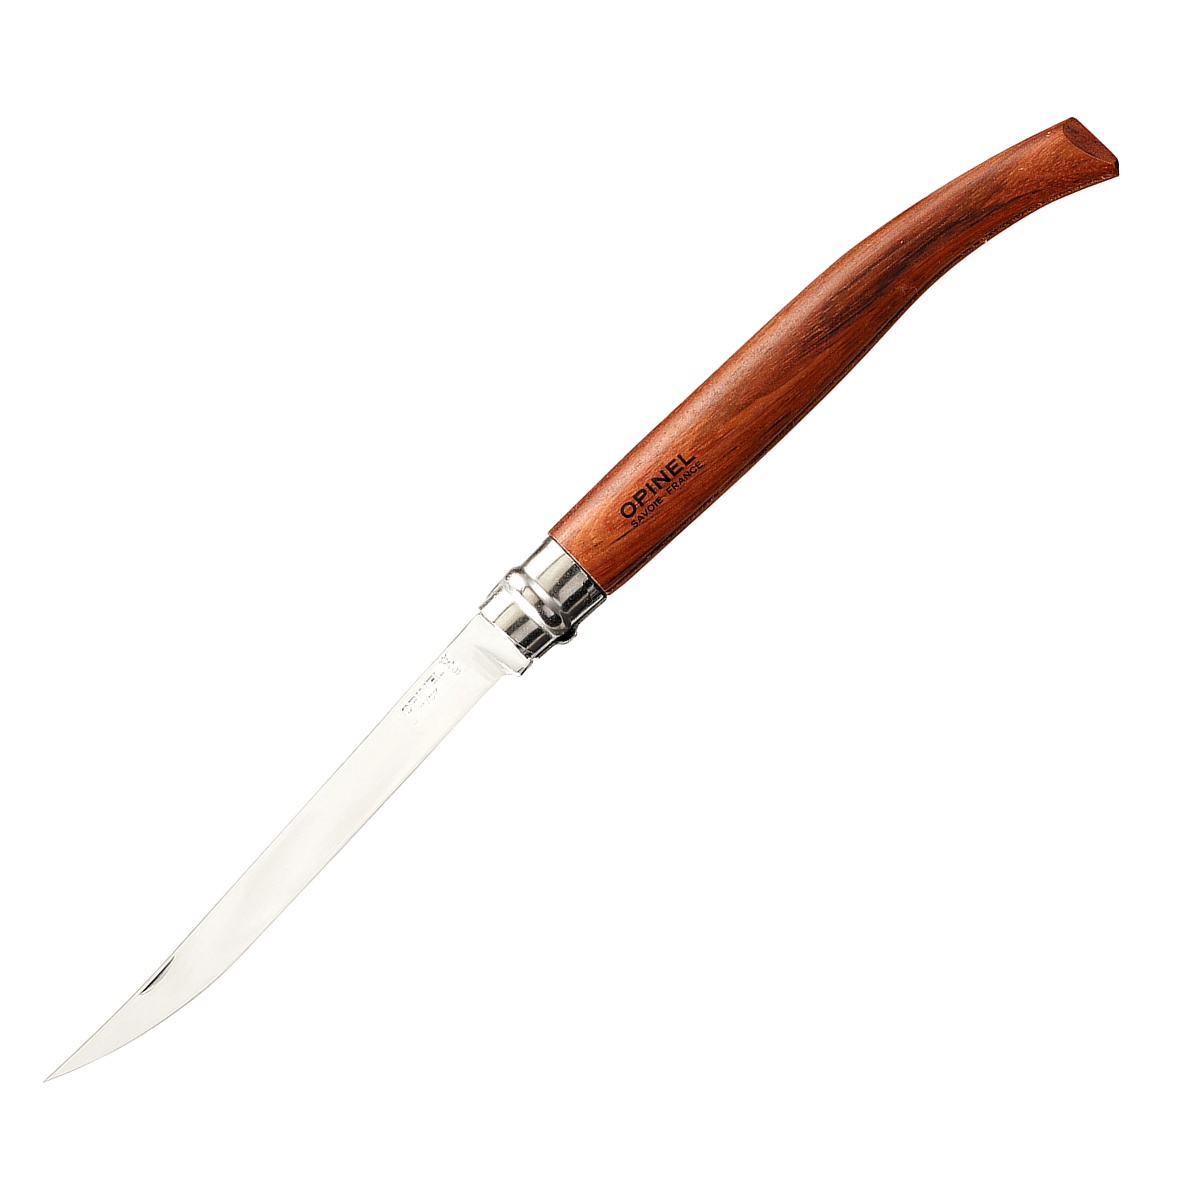 Нож филейный Opinel №15 нержавеющая сталь рукоять бубинга